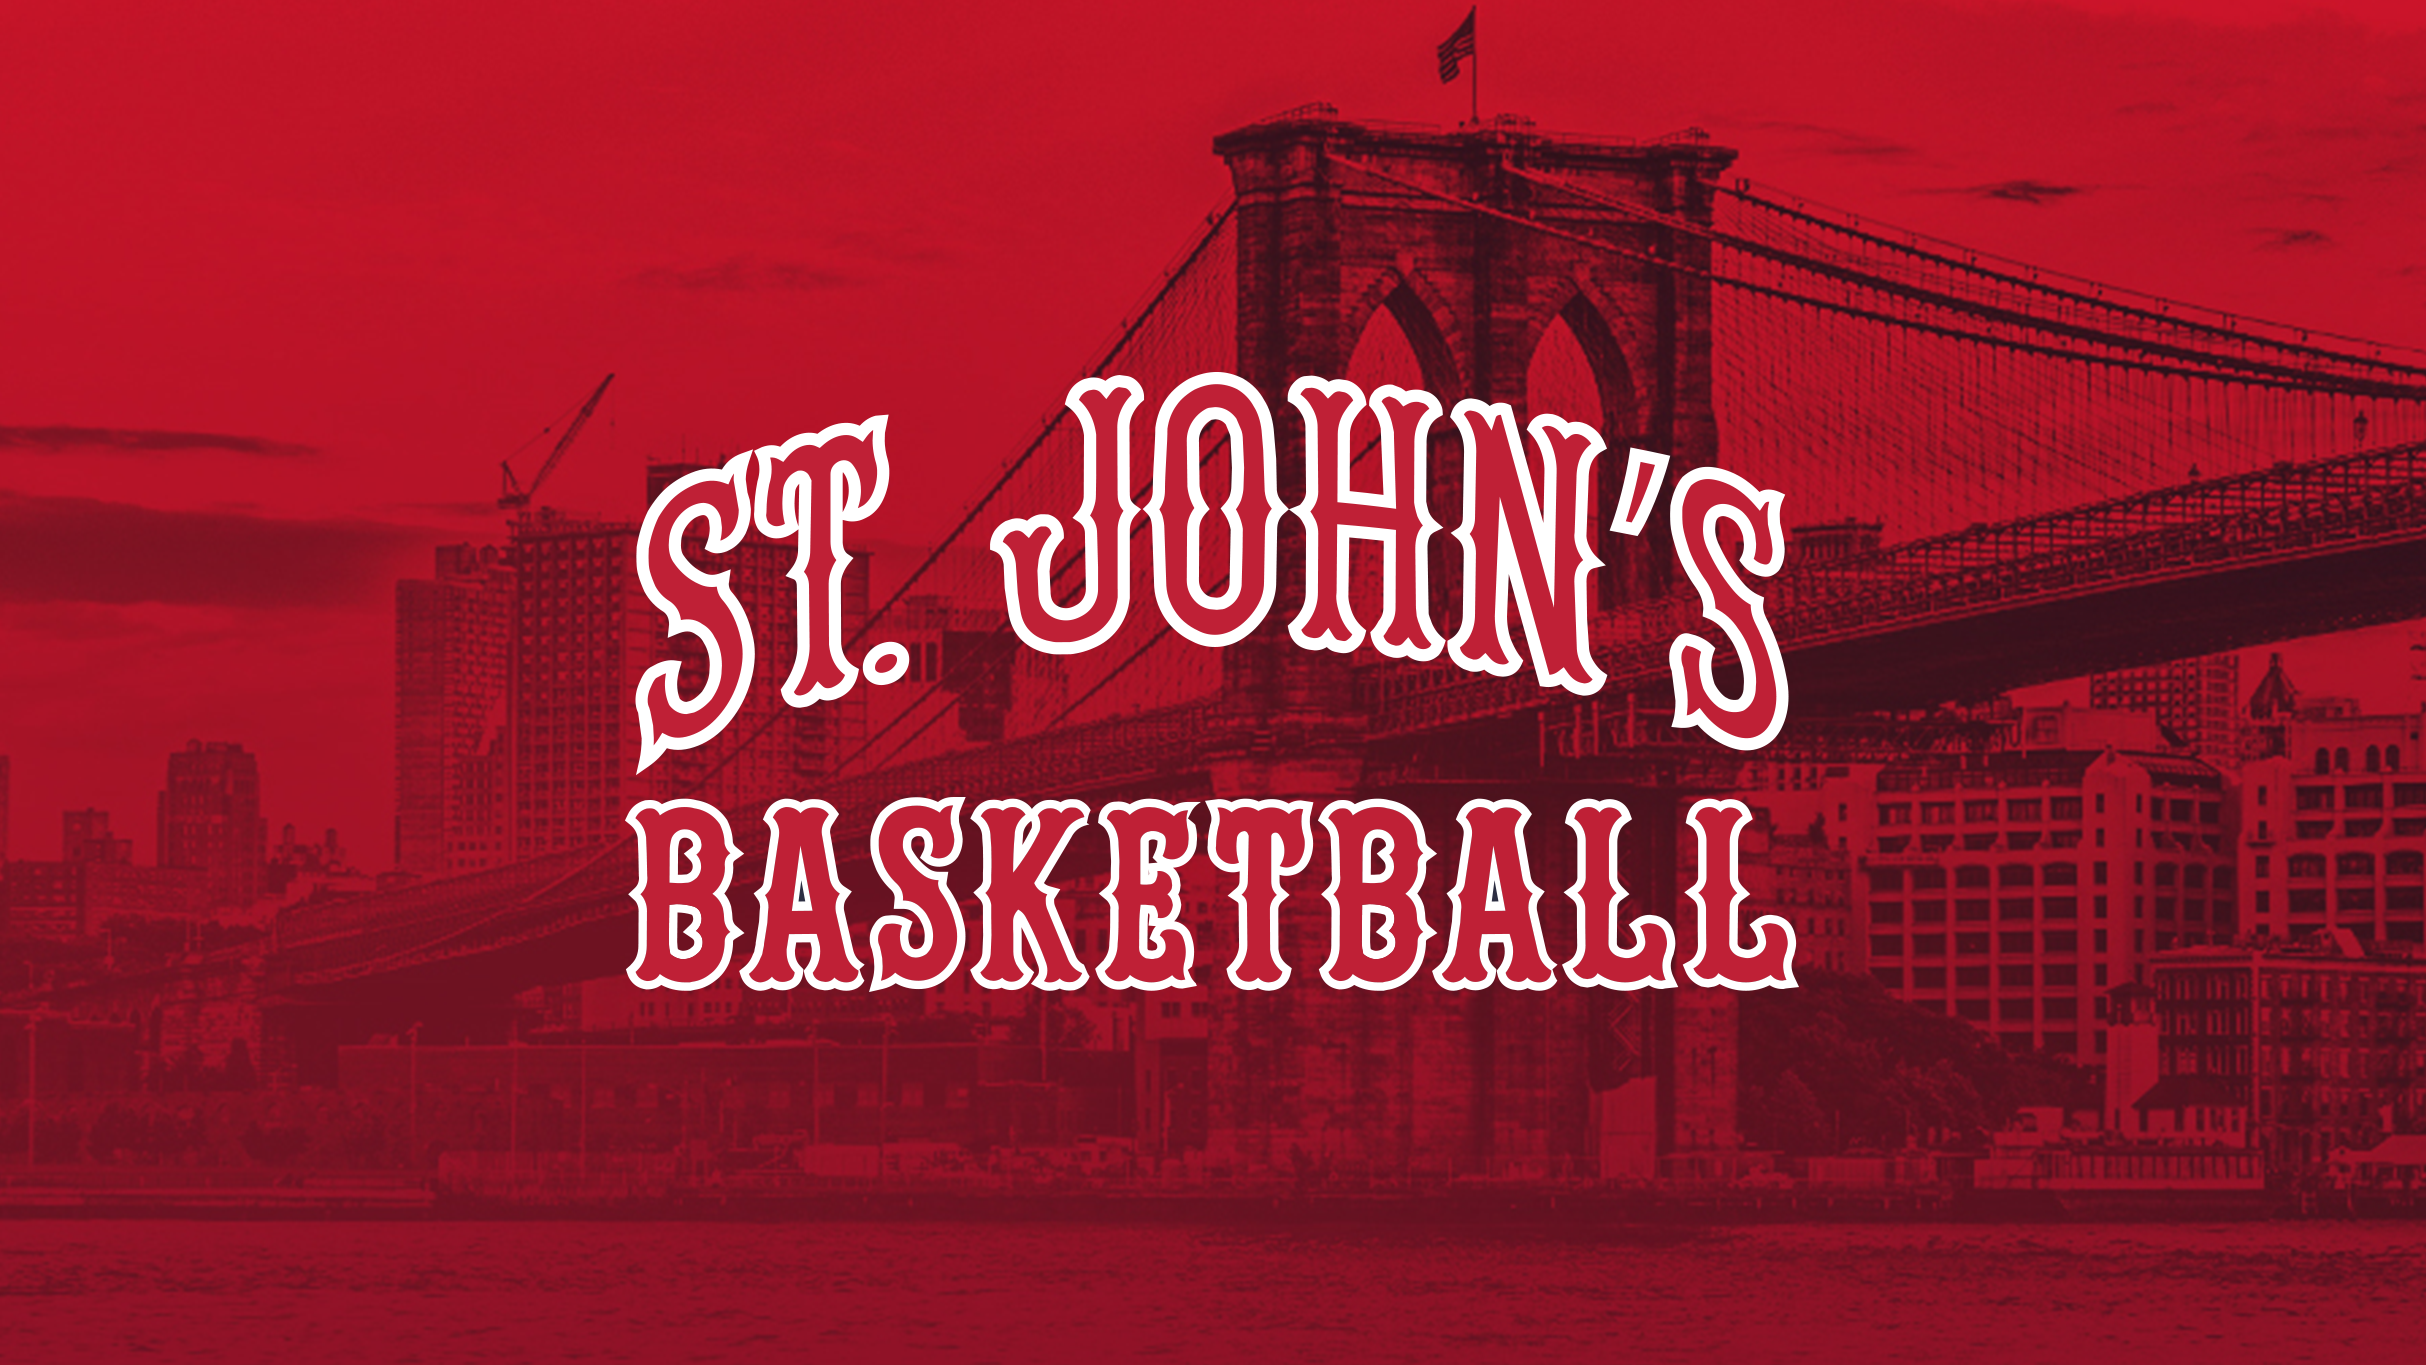 St. John's Red Storm Men's Basketball V. UConn in New York promo photo for Chase Cardholder Preferred Seating presale offer code